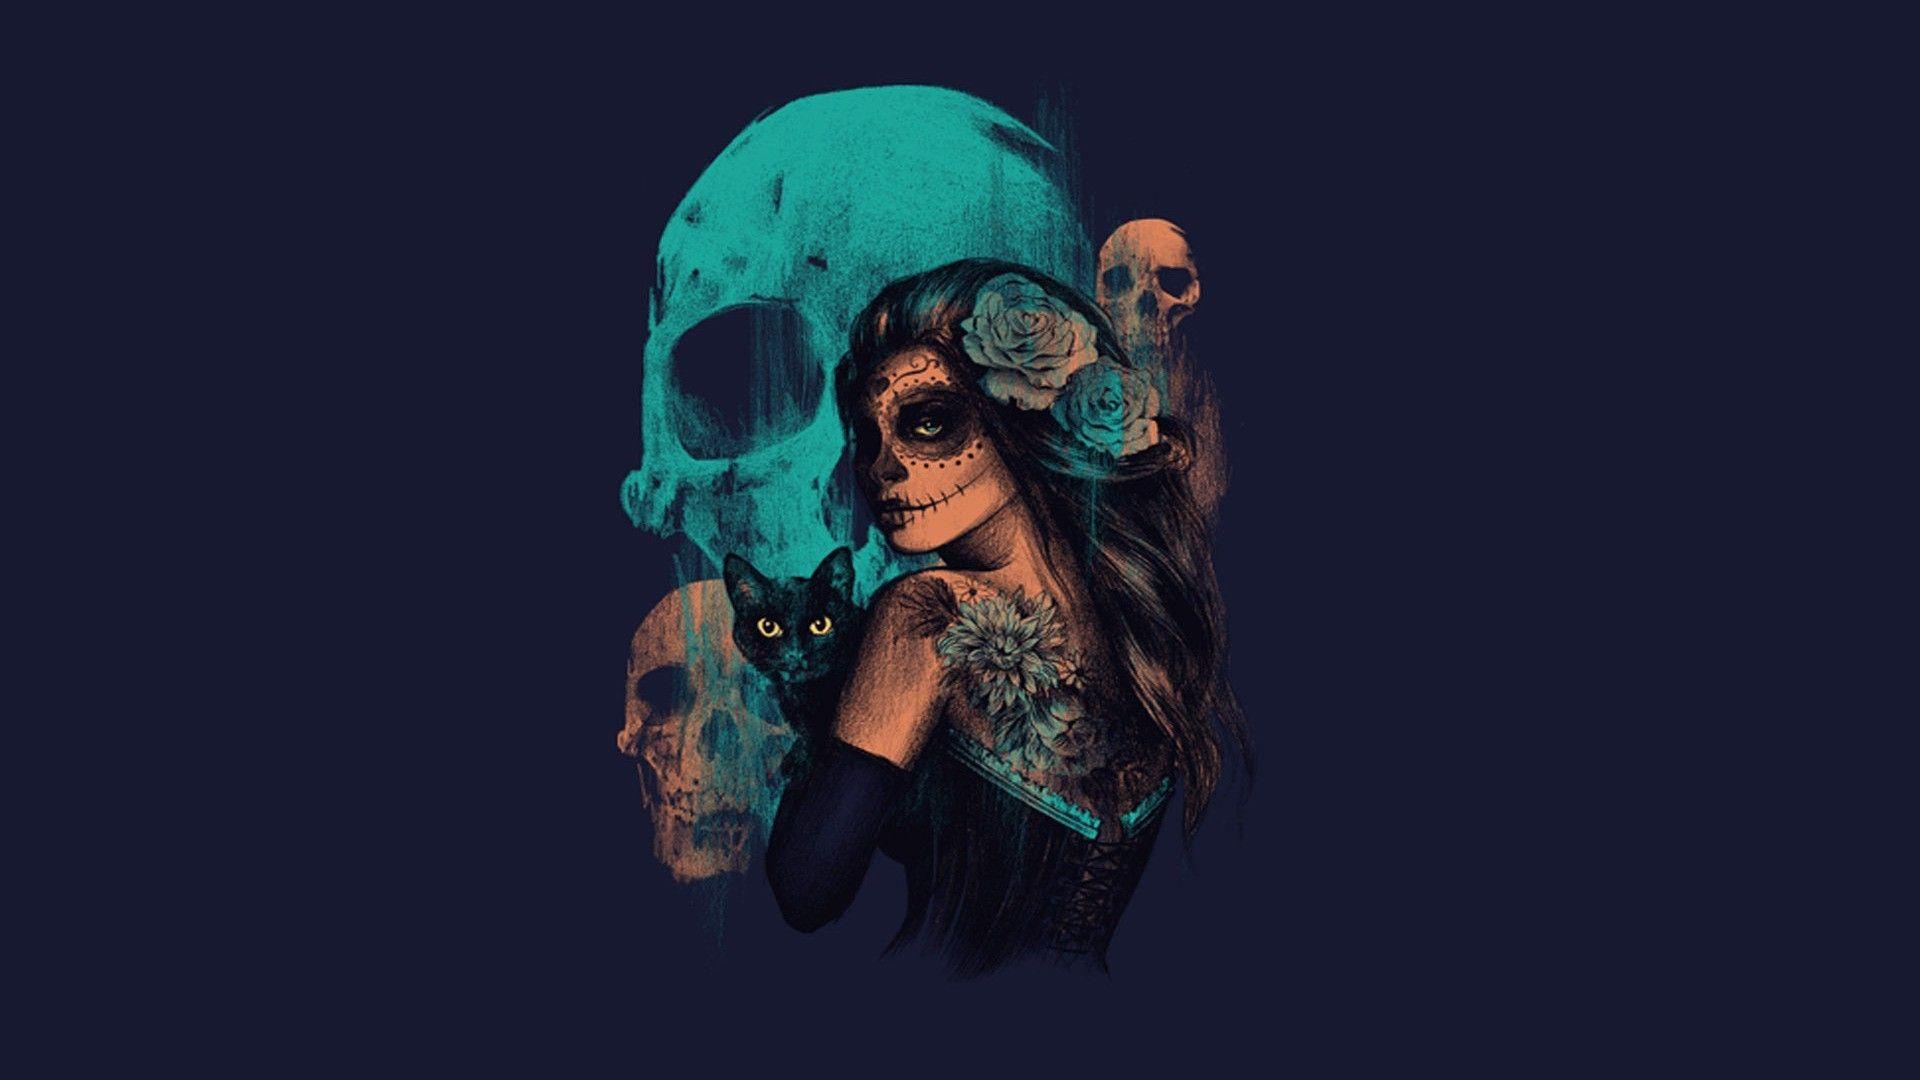 Wallpaper, women, fantasy art, artwork, blue, skull, Sugar Skull, darkness, computer wallpaper 1920x1080